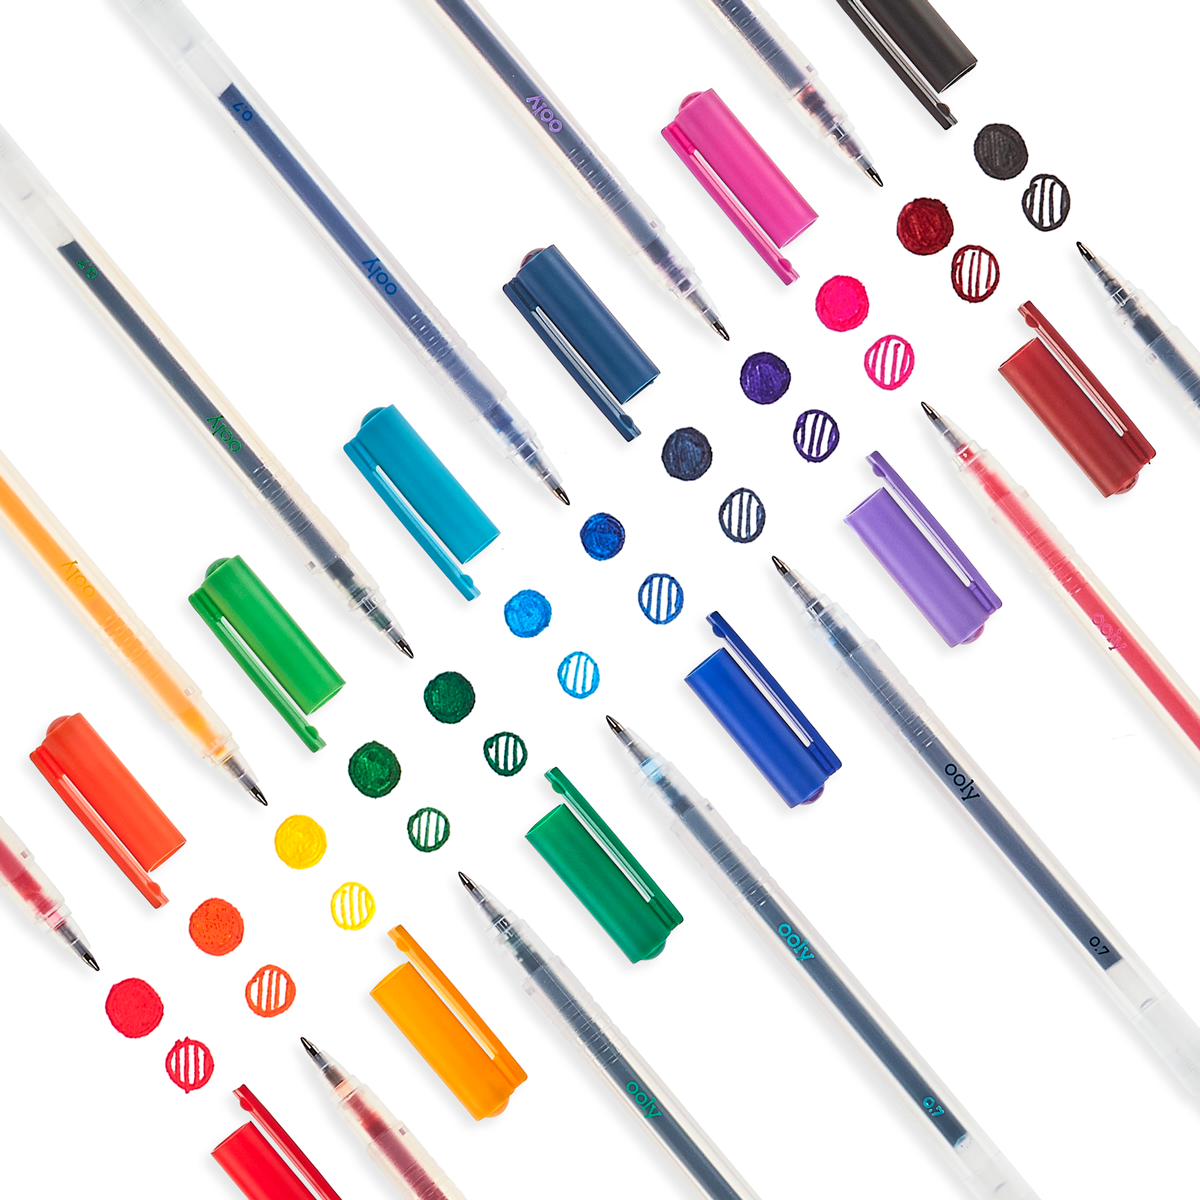 Colorful DIY Creations Using Gel Pens - OOLY